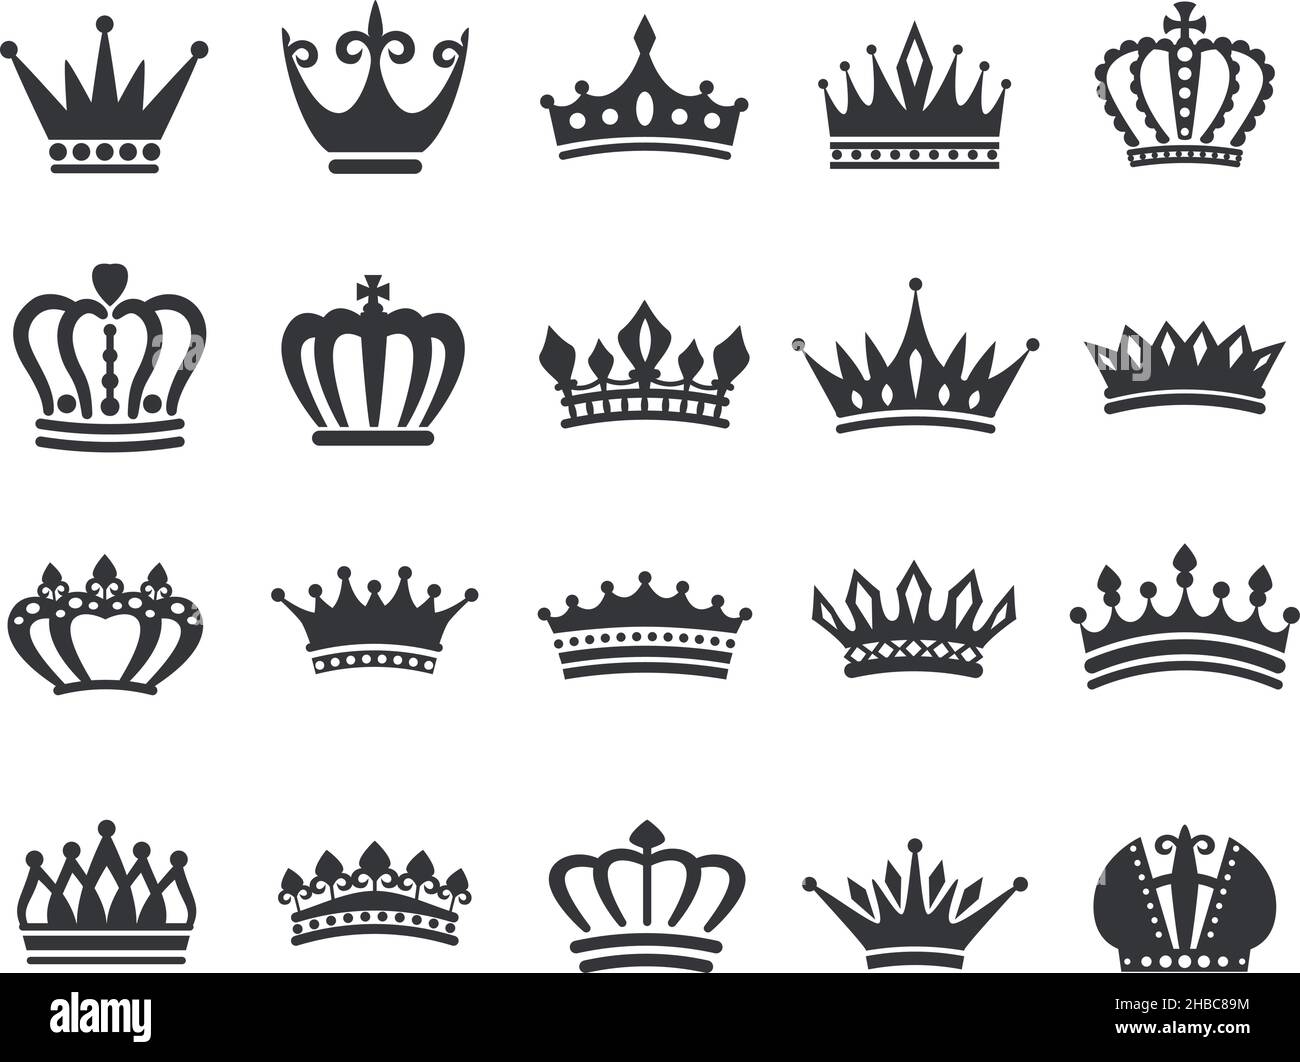 Silueta icono corona rey, tiara reina, logo corona real. Emblema de la dinastía de la energía la realeza, clásico negro heráldico vector conjunto. Joyería de lujo para príncipe o princesa,